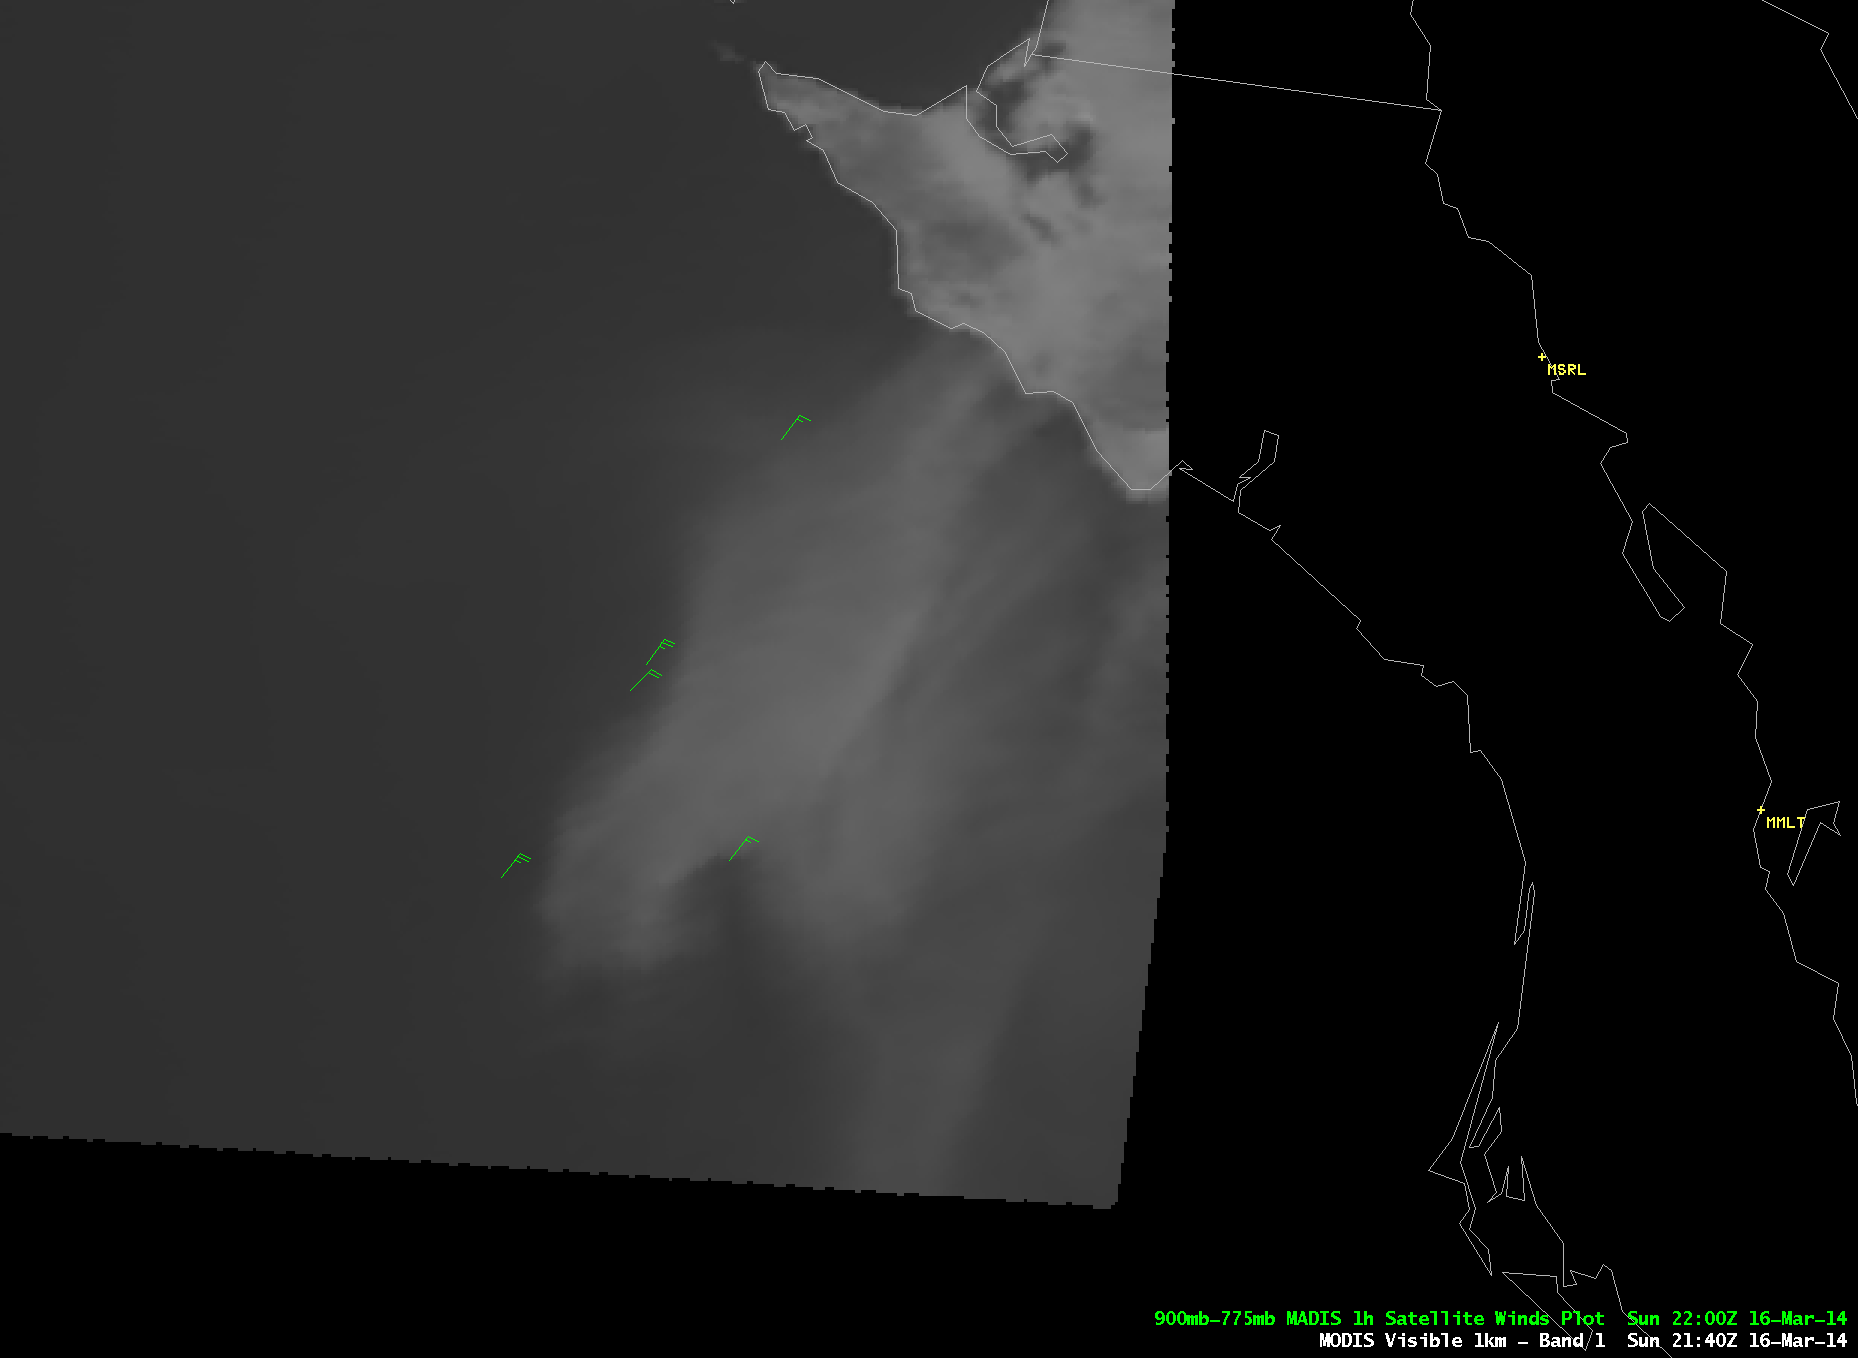 Aqua MODIS 0.65 Âµm visible, 1.38 Âµm cirrus channel, 3.7 Âµm shortwave IR, 11.0 Âµm IR, and 6.7 Âµm water vapor channel images